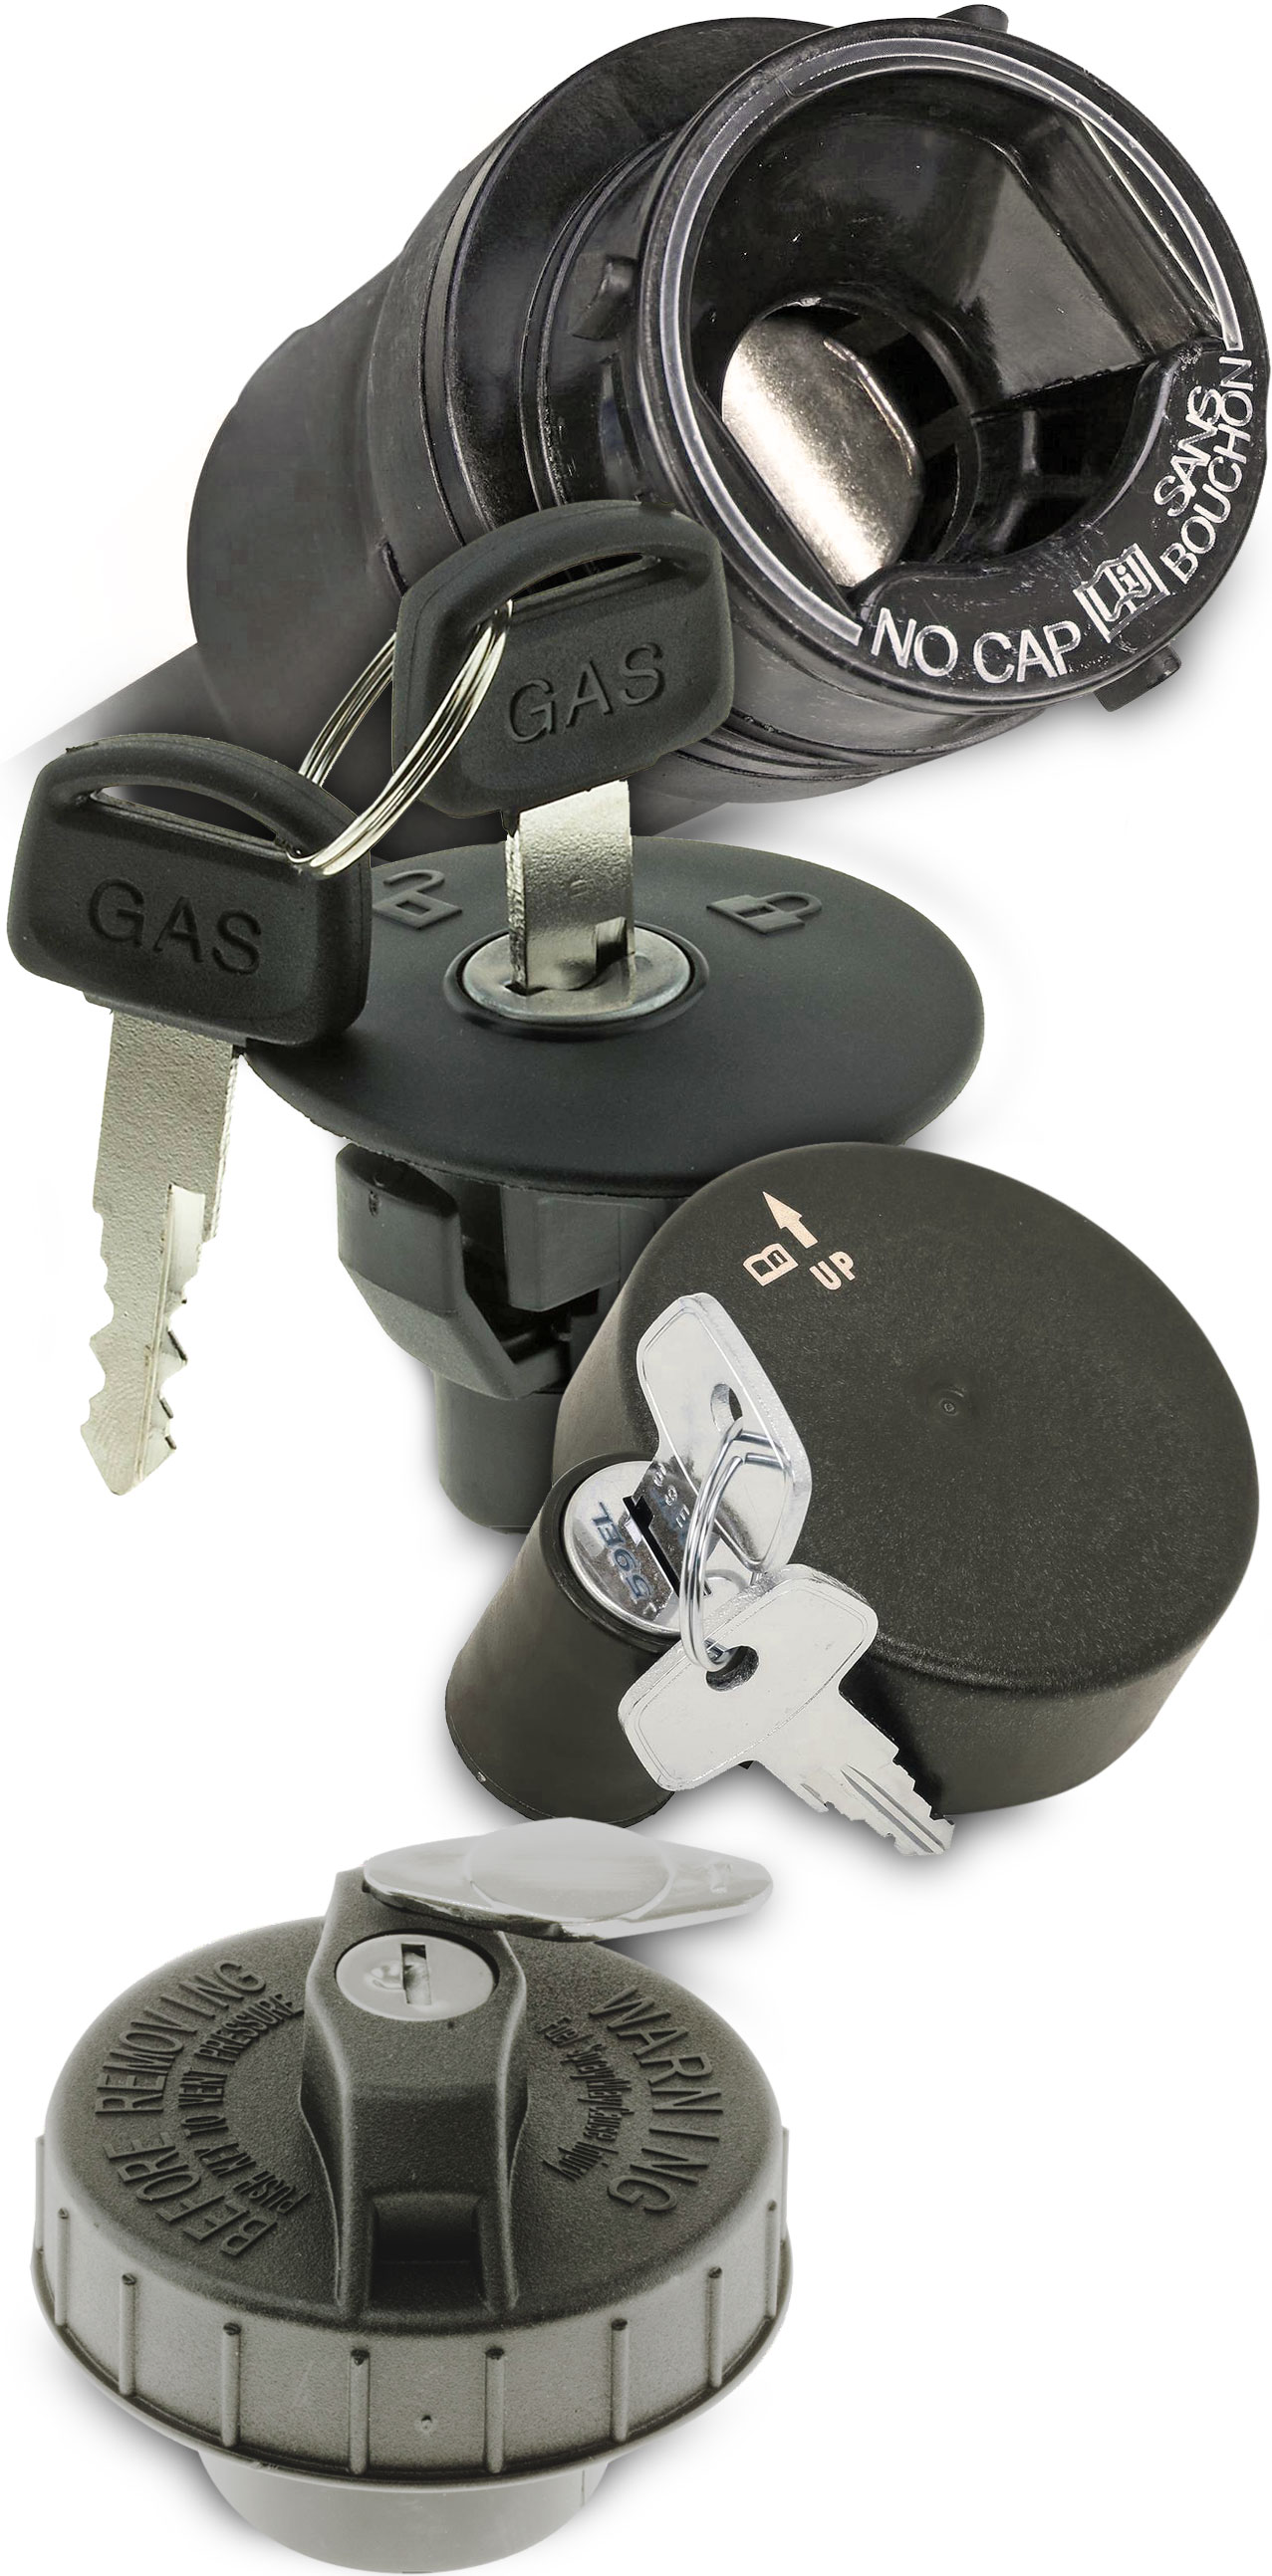 Locking gas cap/plugs